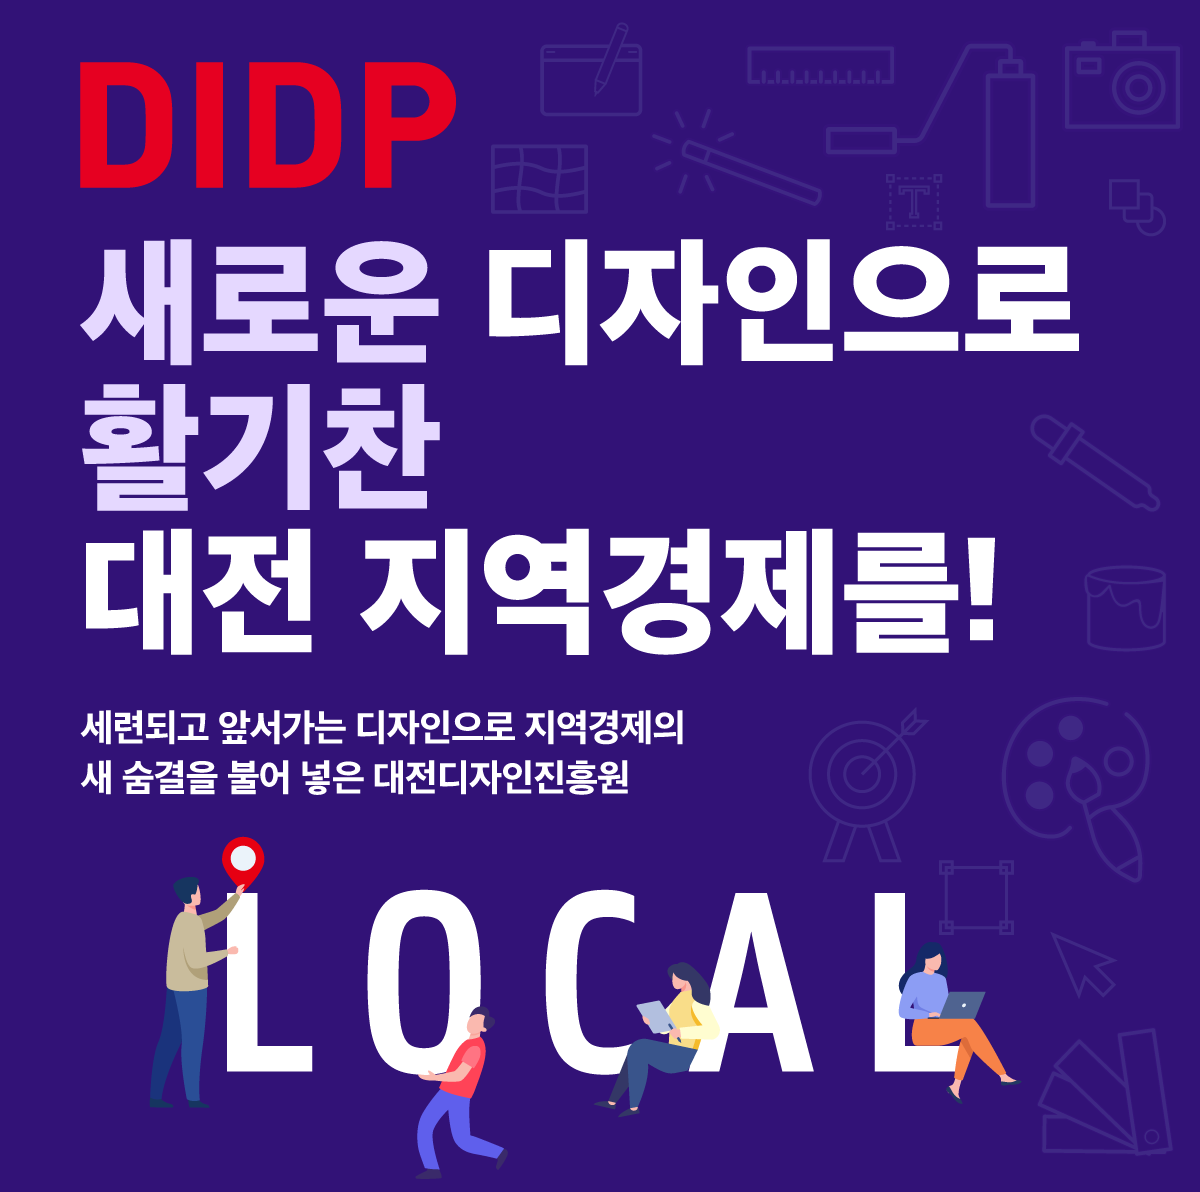 DIDP, 새로운 디자인으로 활기찬 대전 지역경제를!